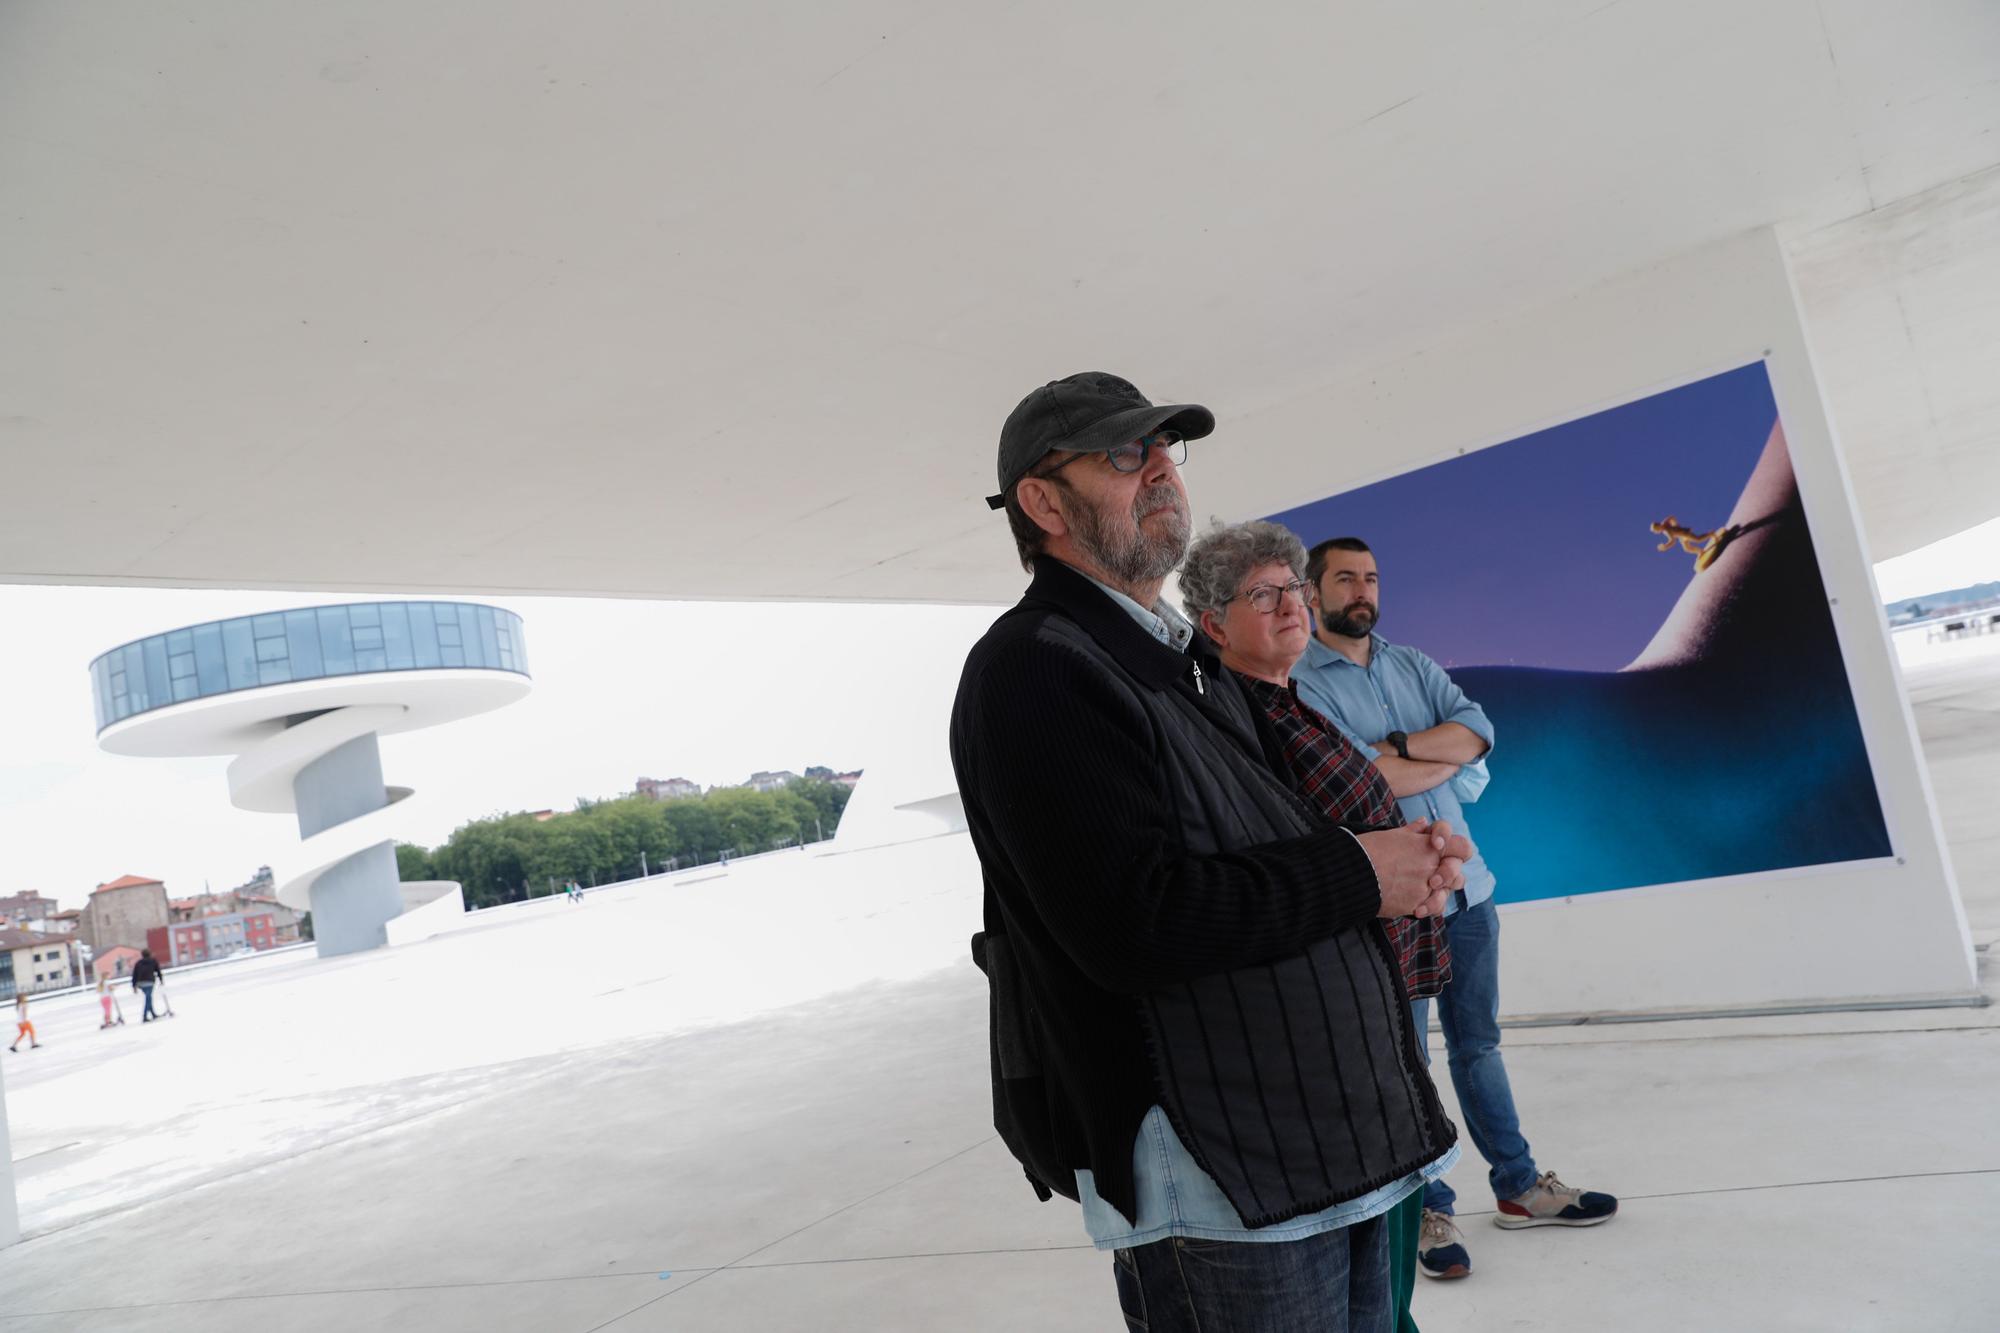 El "mapamundi" del Niemeyer